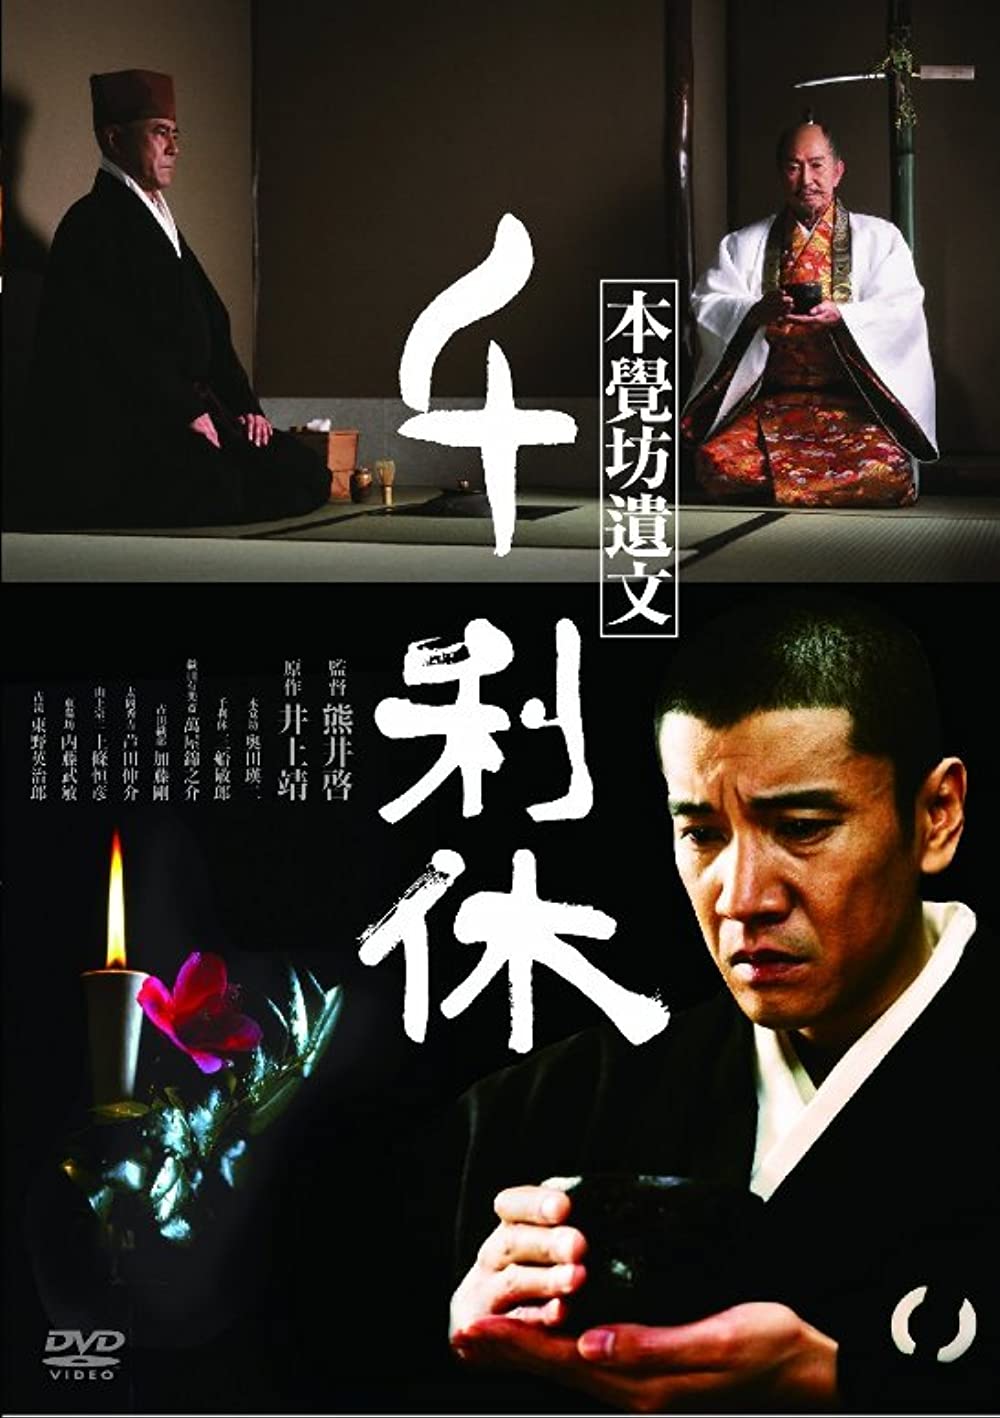 دانلود فیلم Sen no Rikyu: Honkakubô ibun 1989